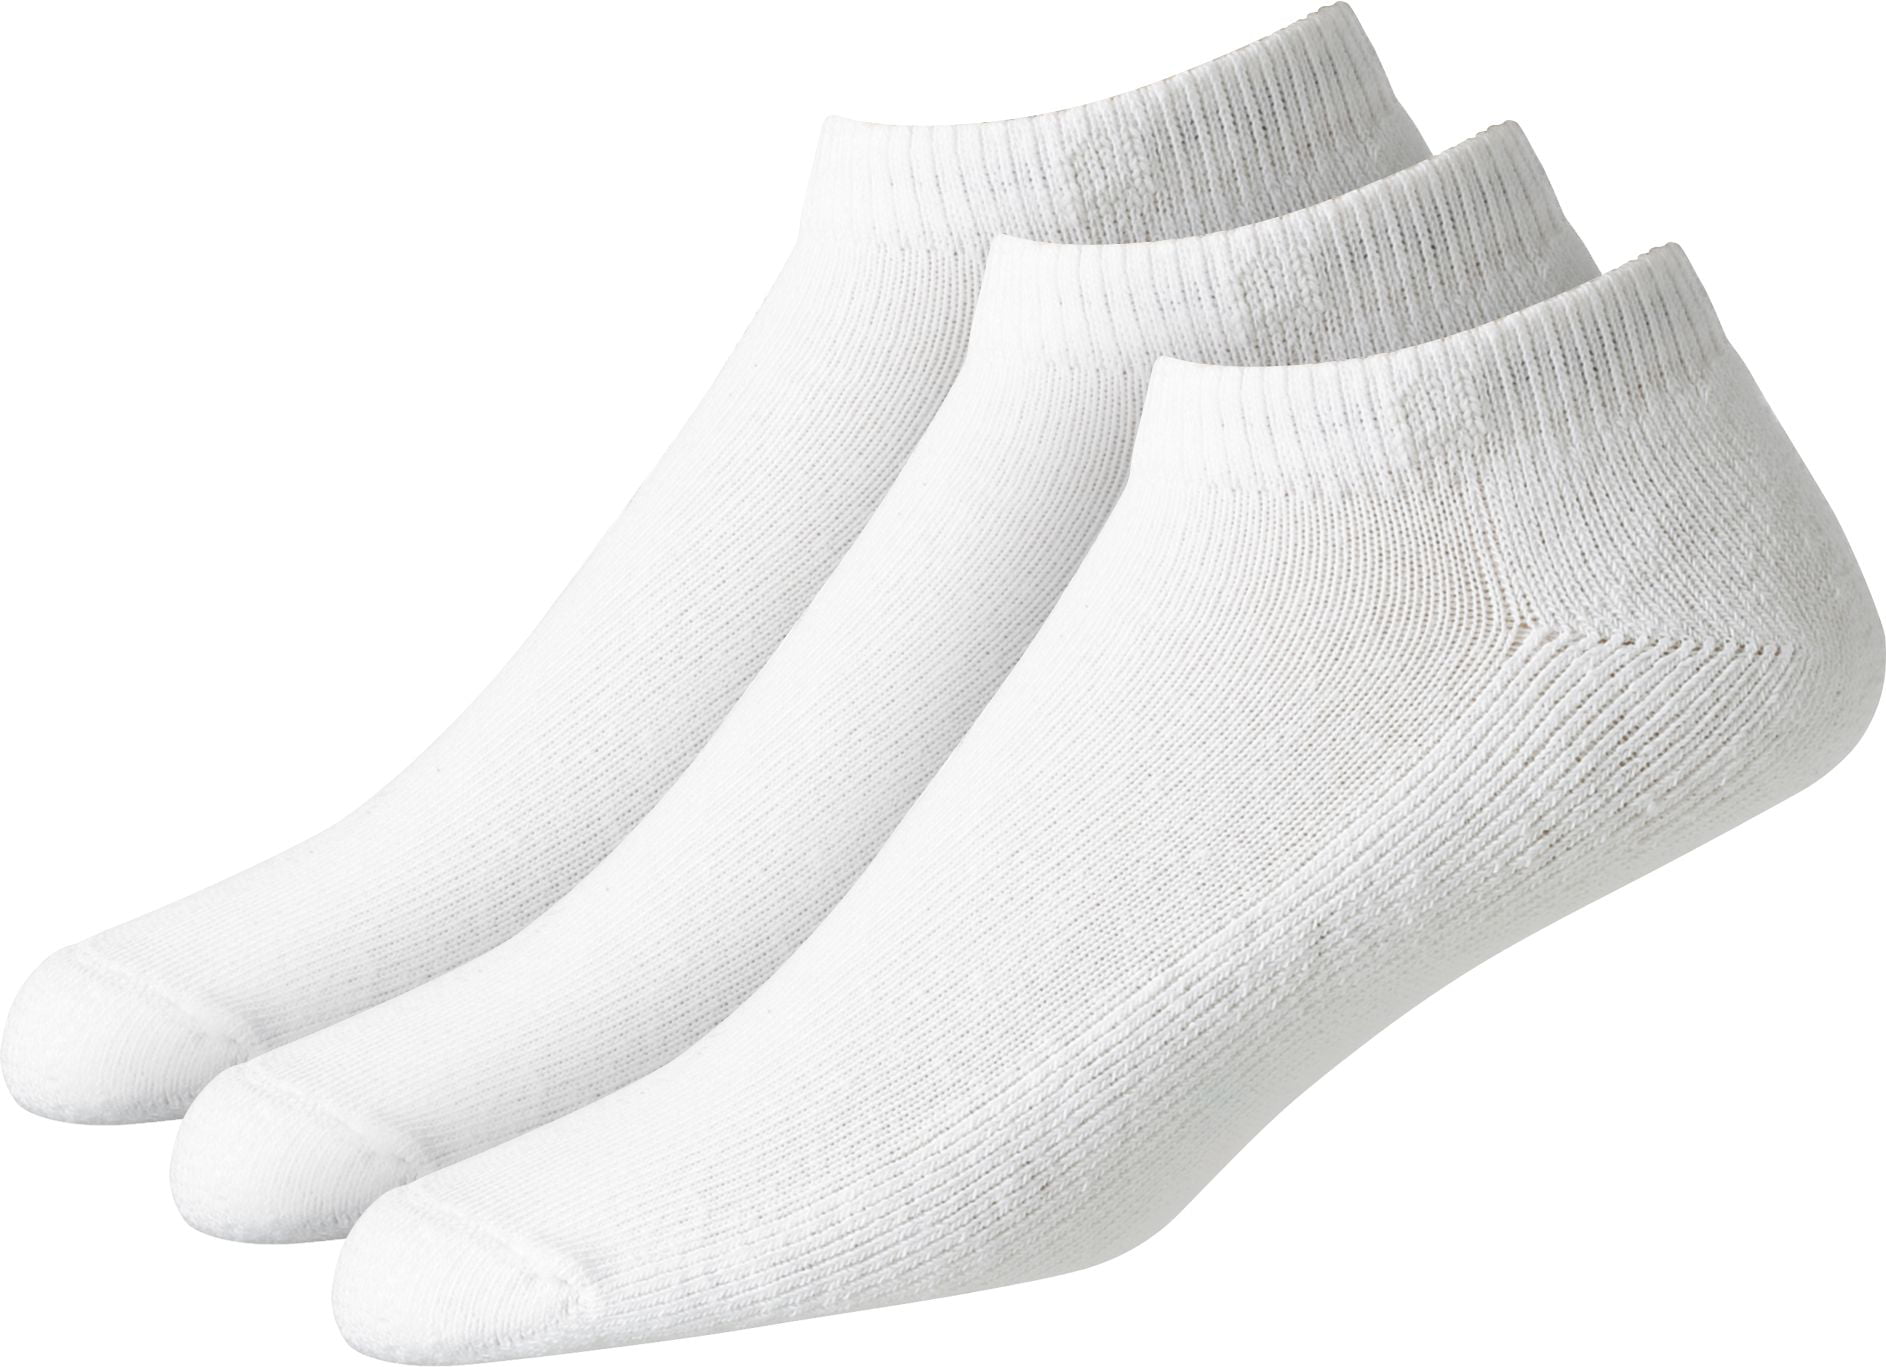 footjoy socks 3 pack